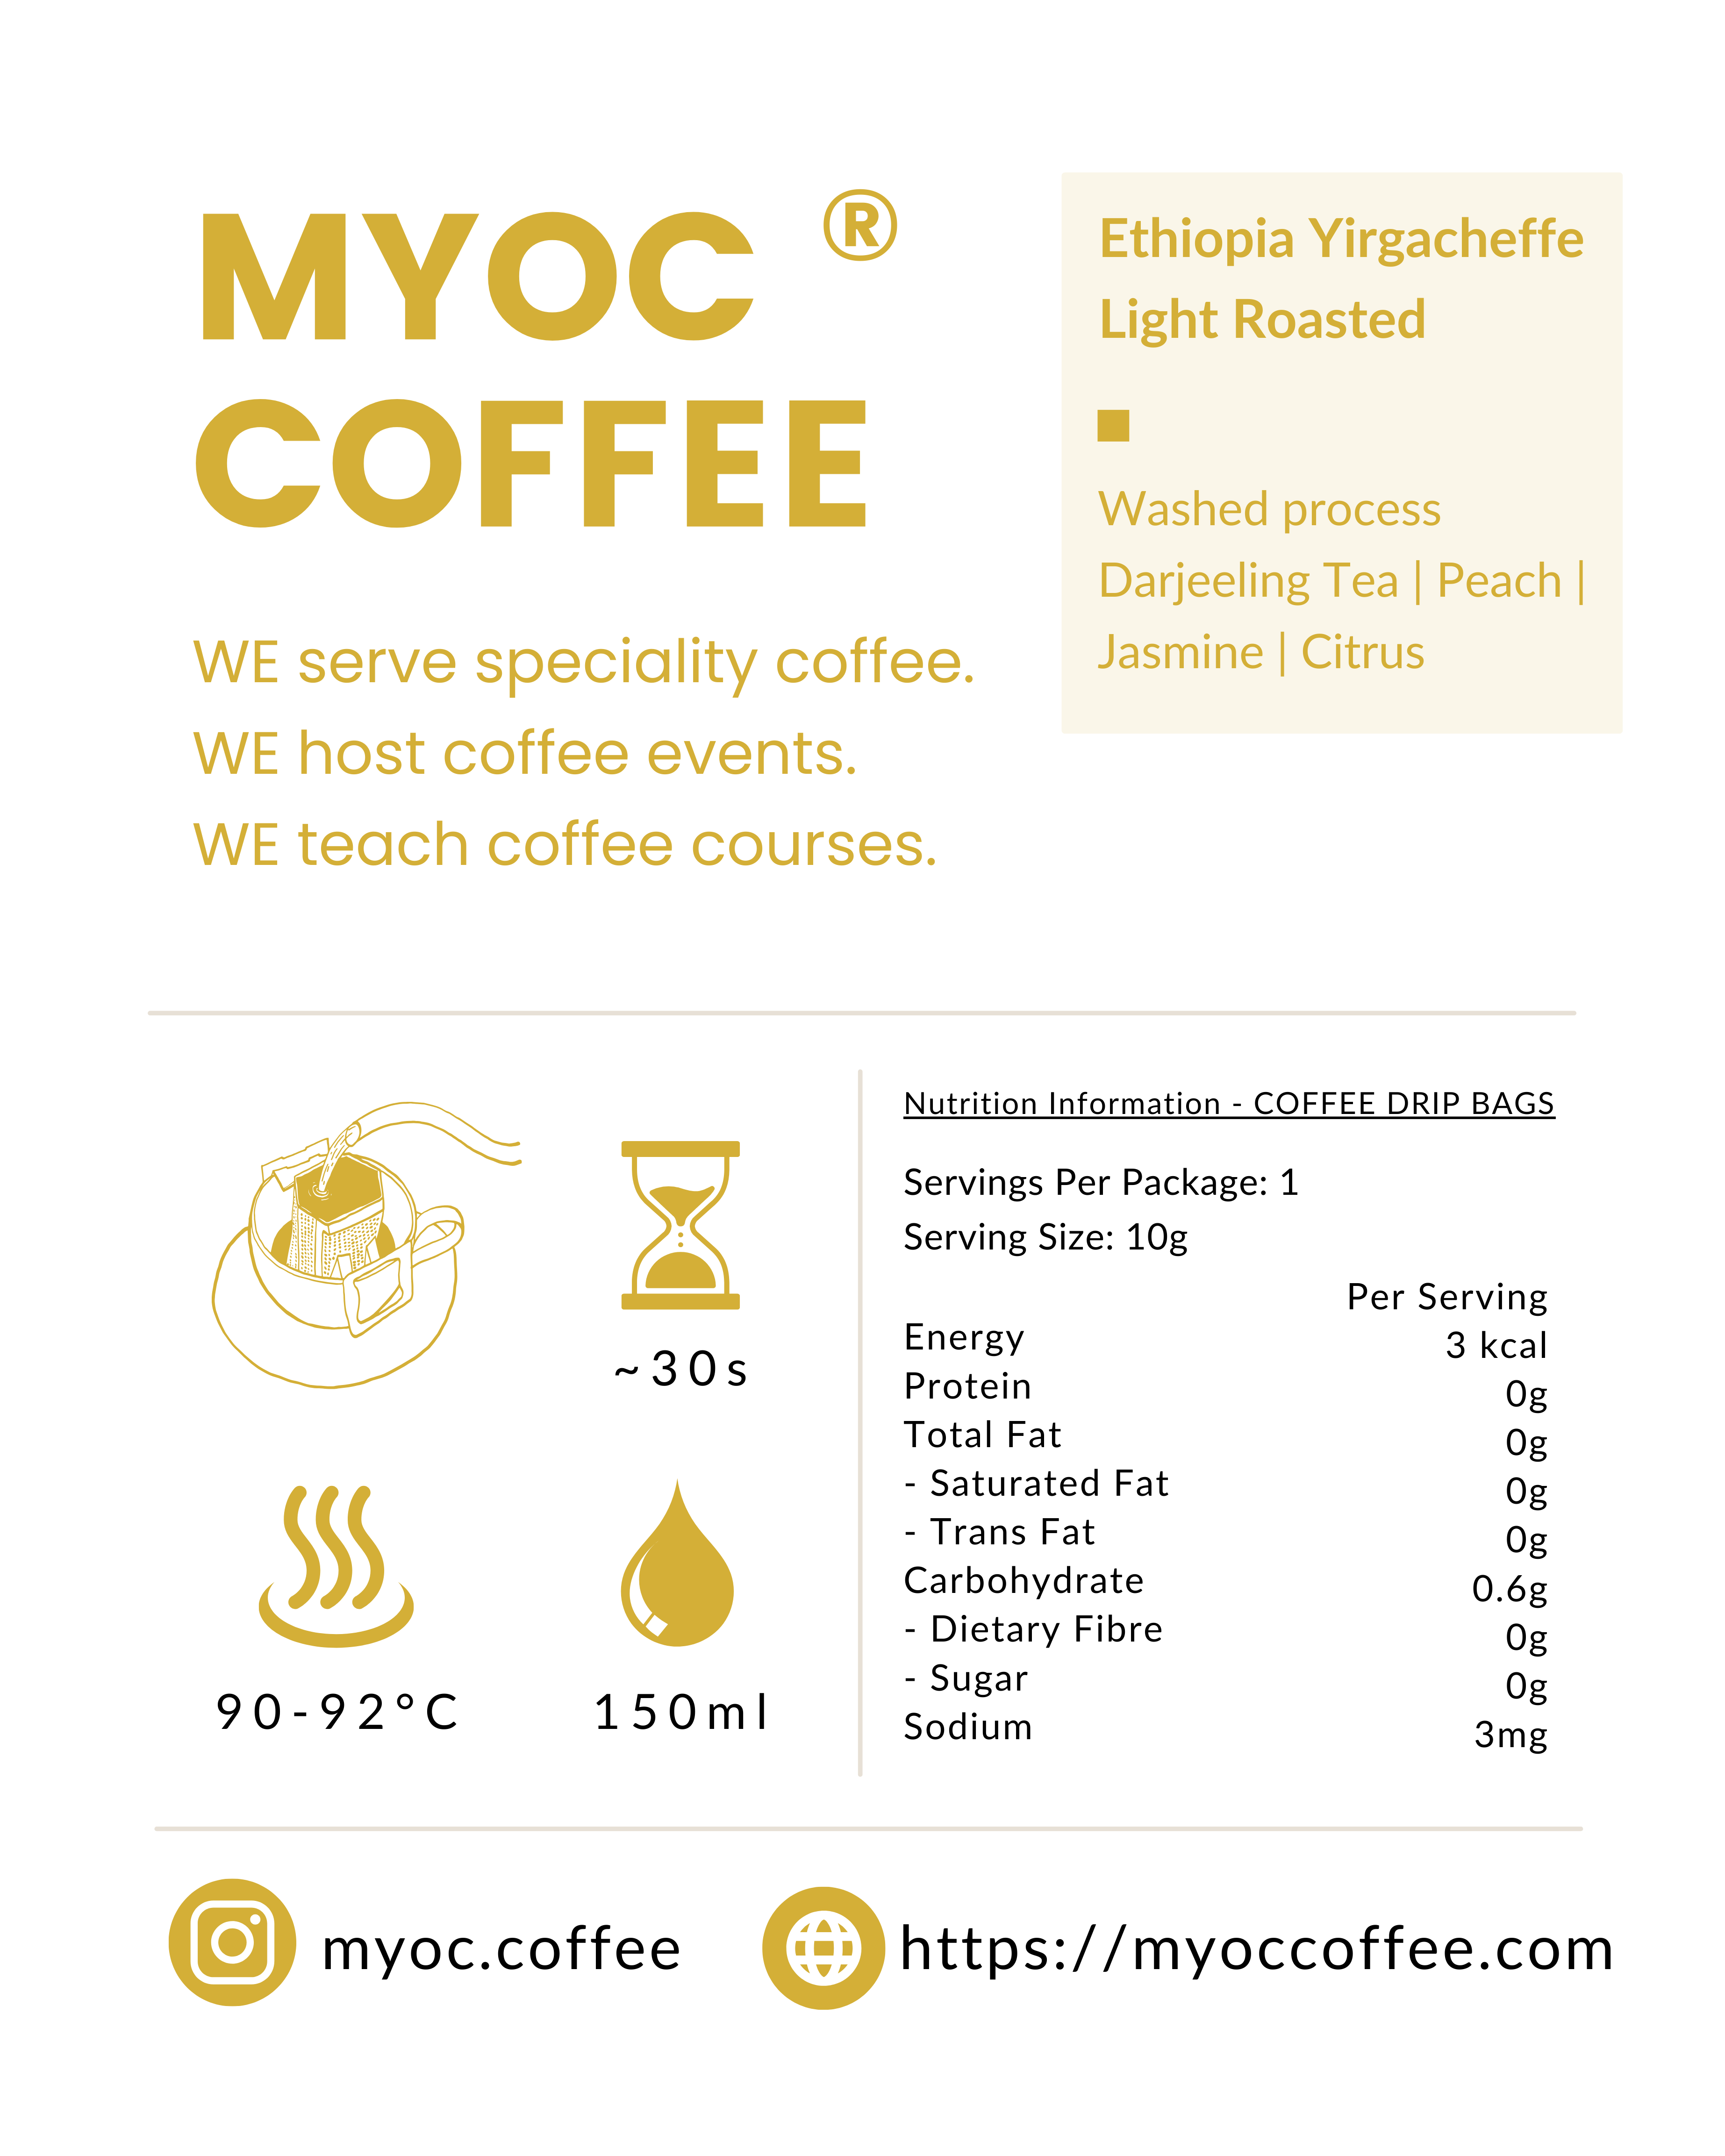 現貨 MYOC COFFEE 咖啡掛耳包 埃塞俄比亞 ETHIOPIA Yirgacheffe G1 (1個裝 / 10個裝 / 50個裝)